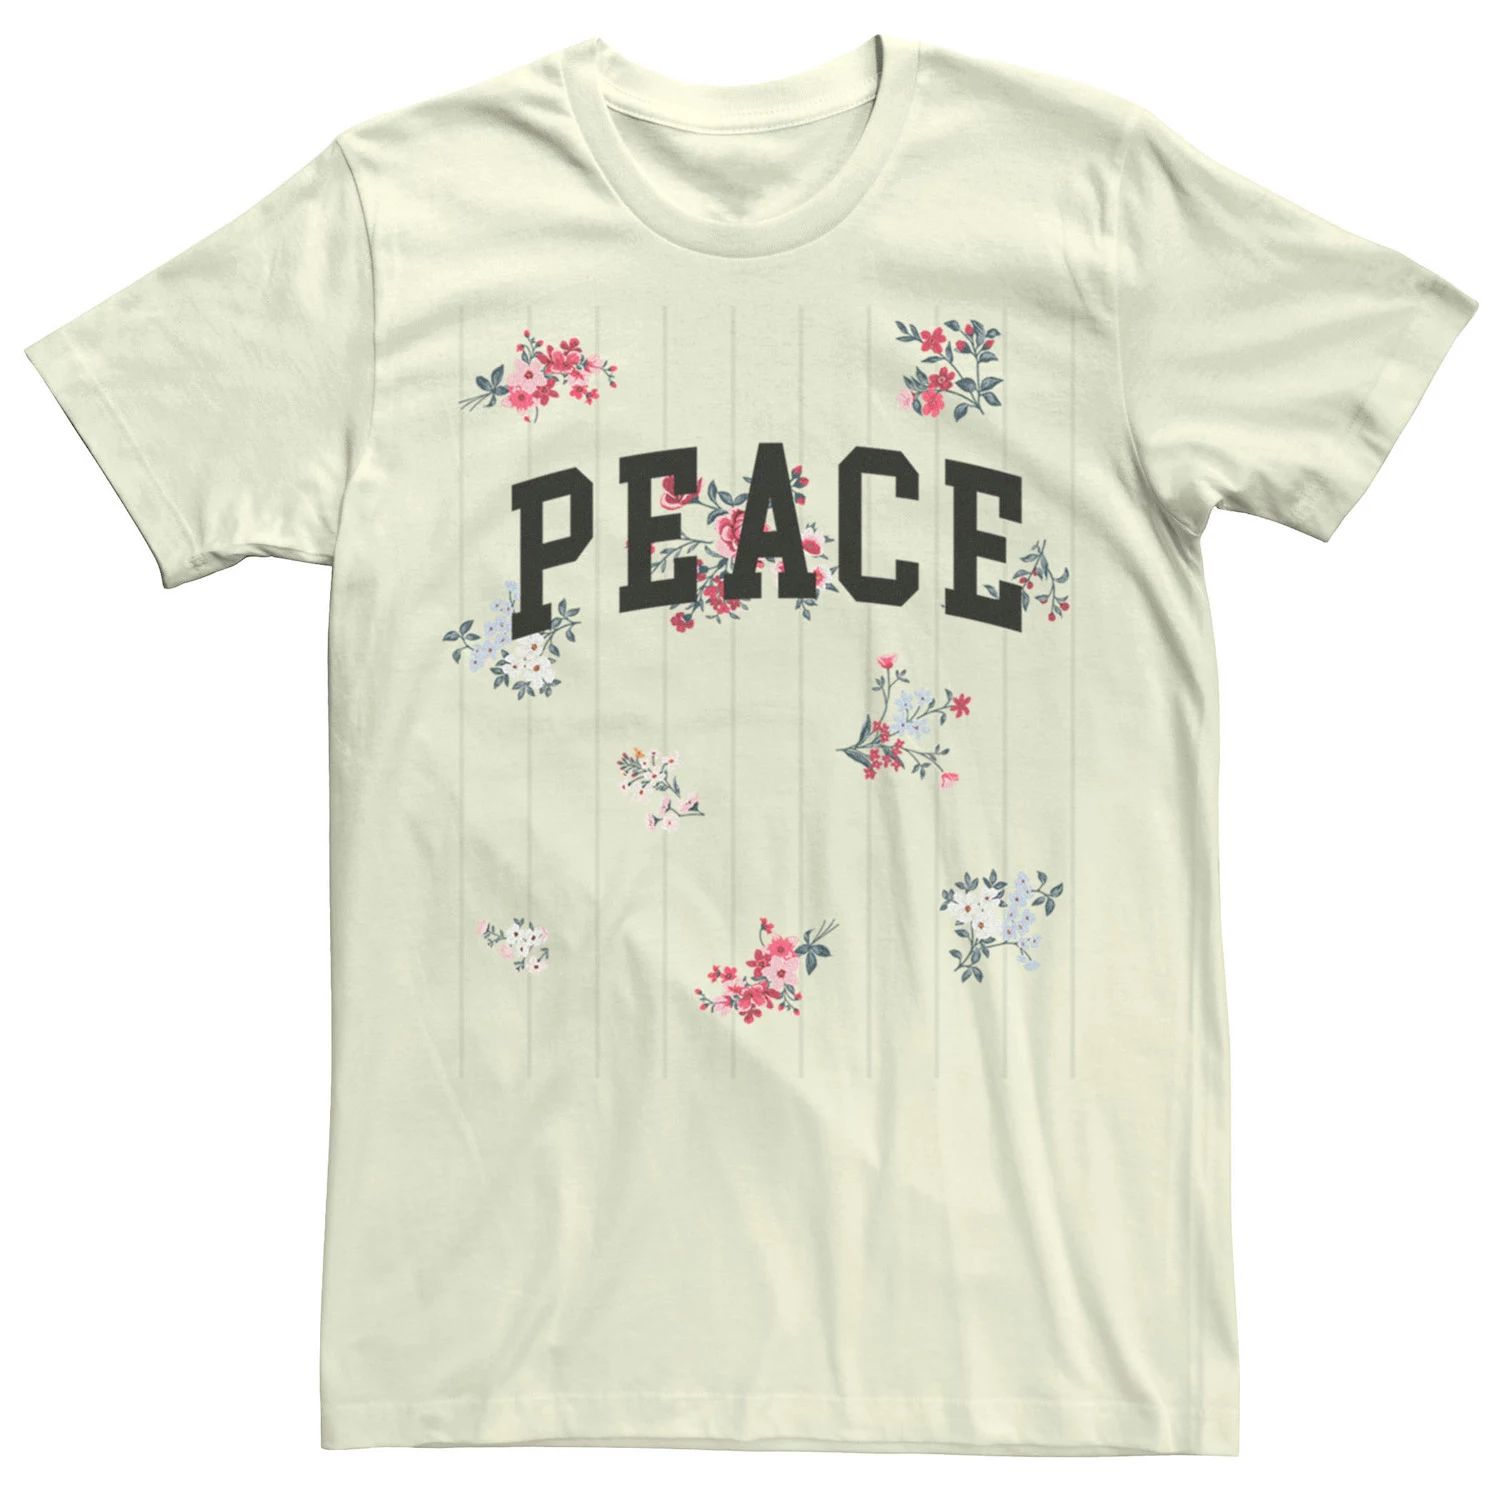 Мужская футболка Peace с маленькими цветами Licensed Character мужская футболка кот с цветами s черный